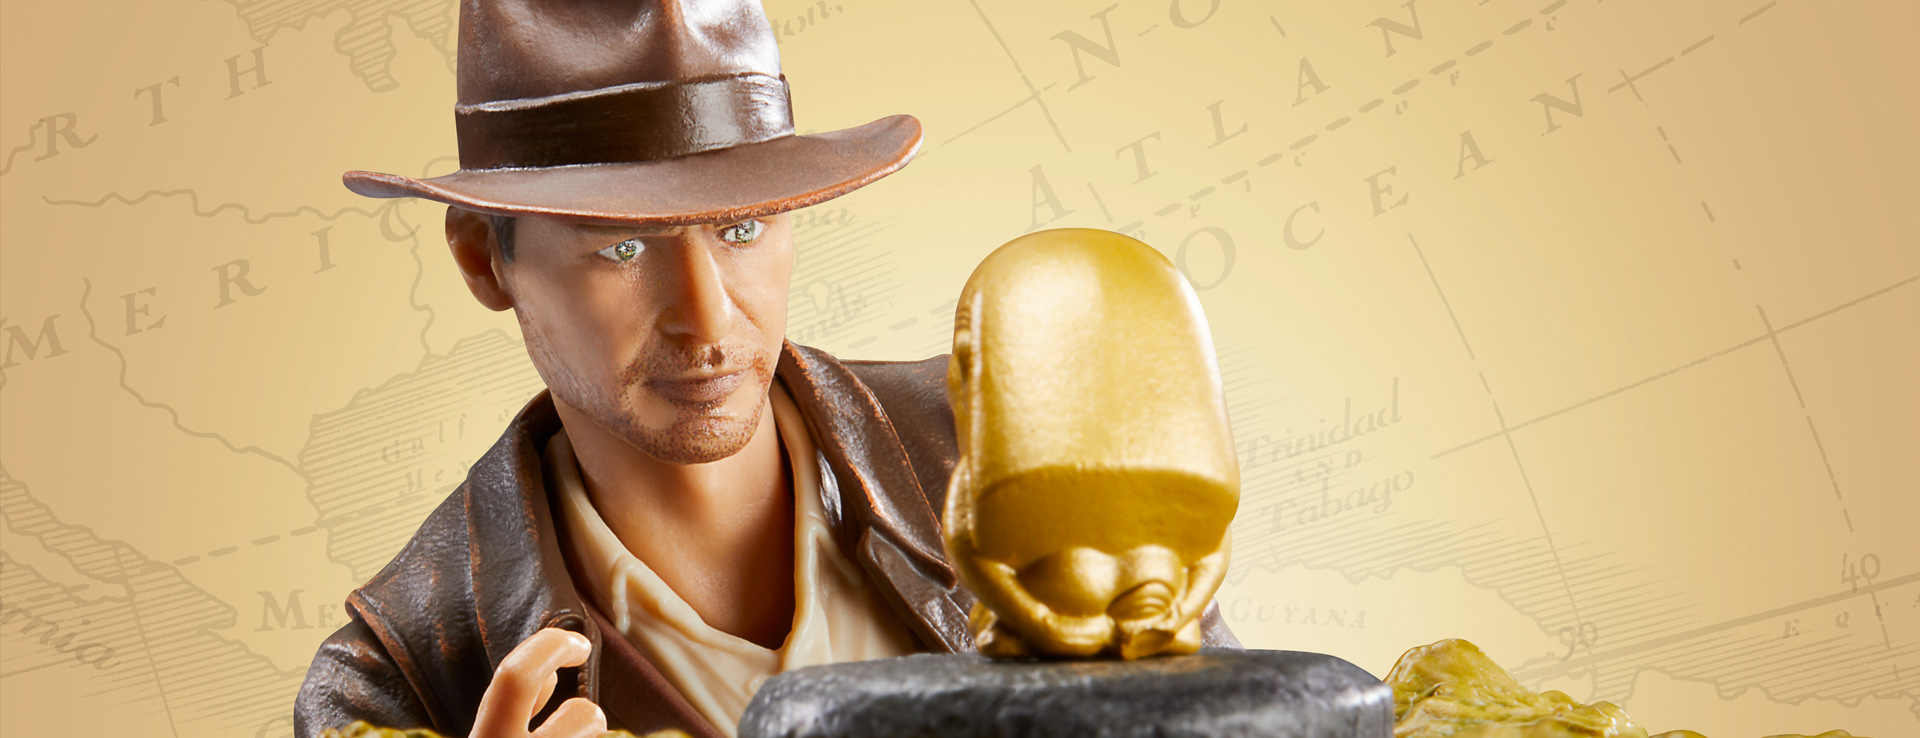 Indiana Jones Adventure Series 6-Inch Action Figures Wave 2 Case